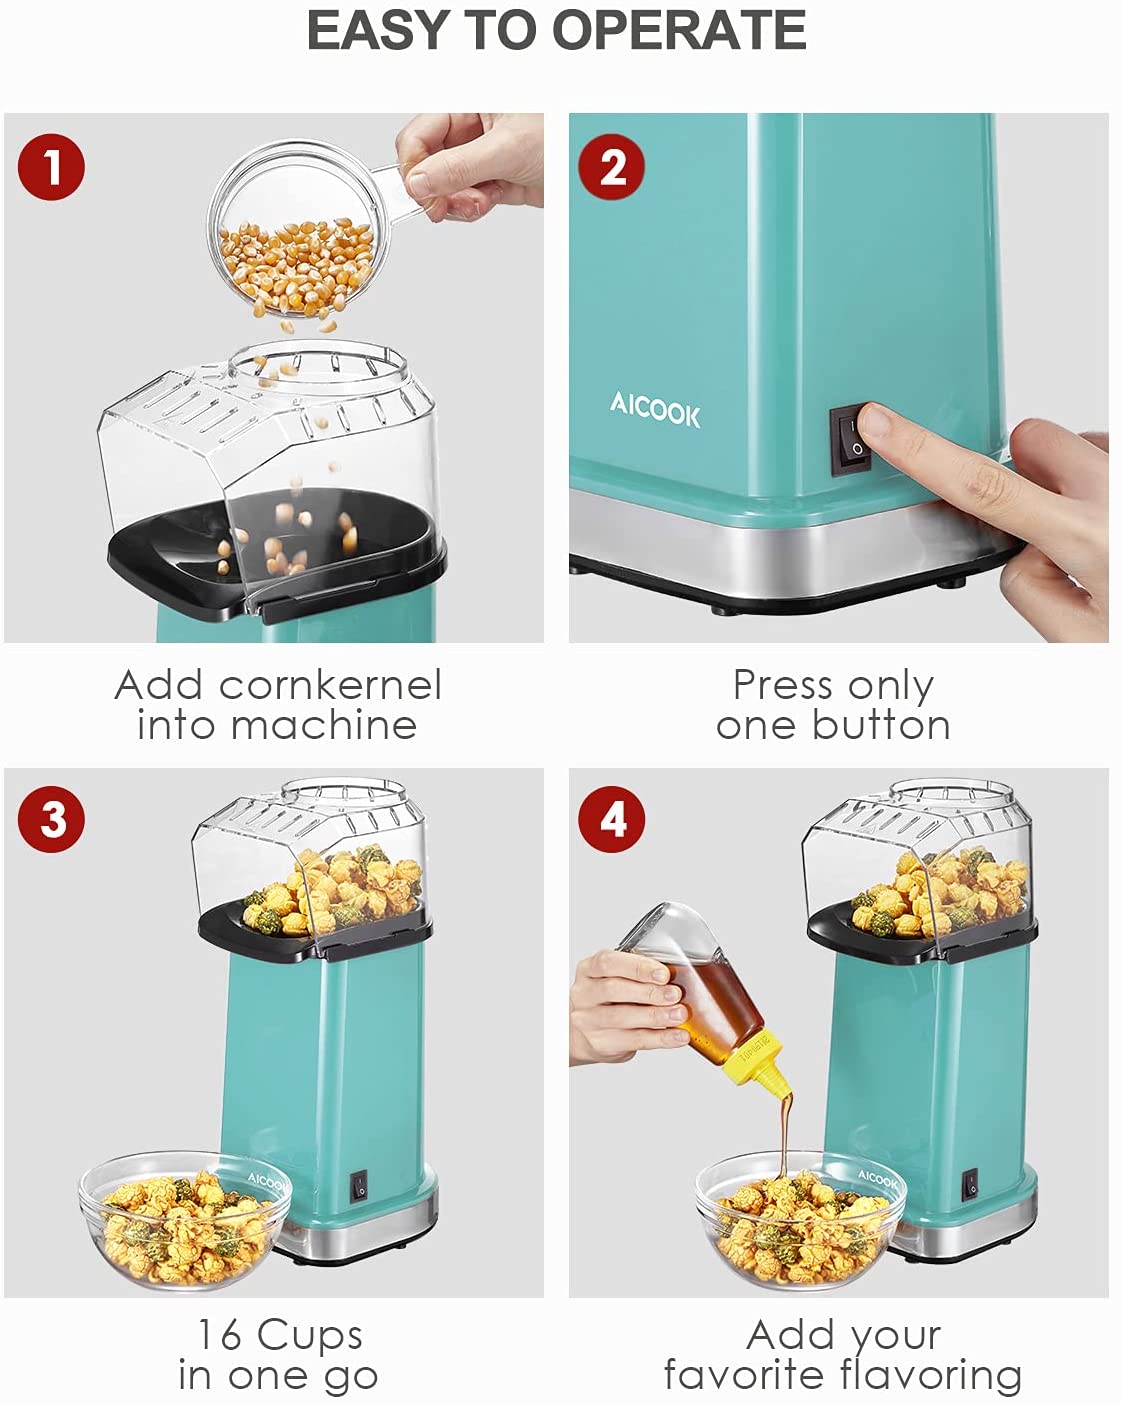 Aoibox 1,100-Watt 64 Oz. Sea Green Hot Air Popcorn Machine Hot Air